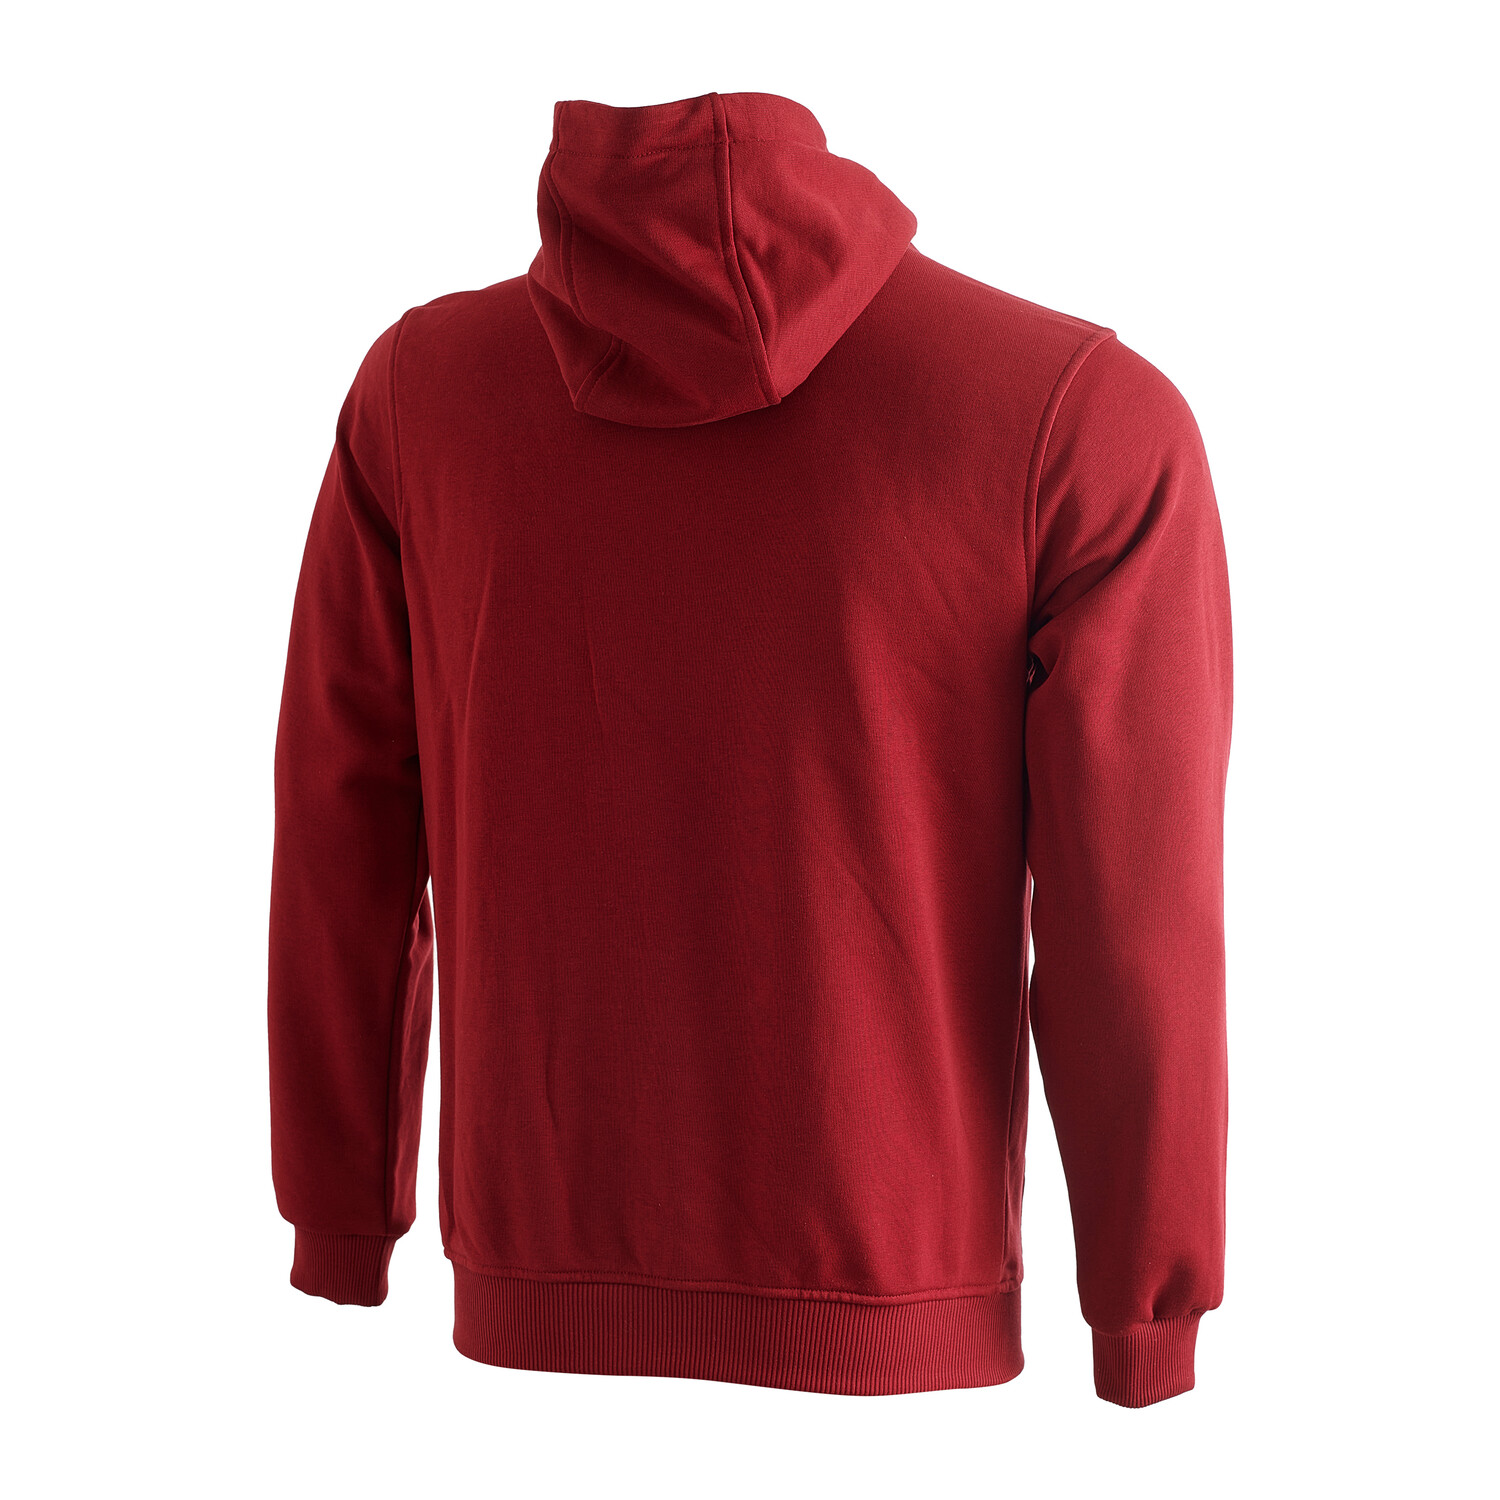 Cresta // Full Zip Hooded College Sweatshirt // Red (3XL) - Cresta ...